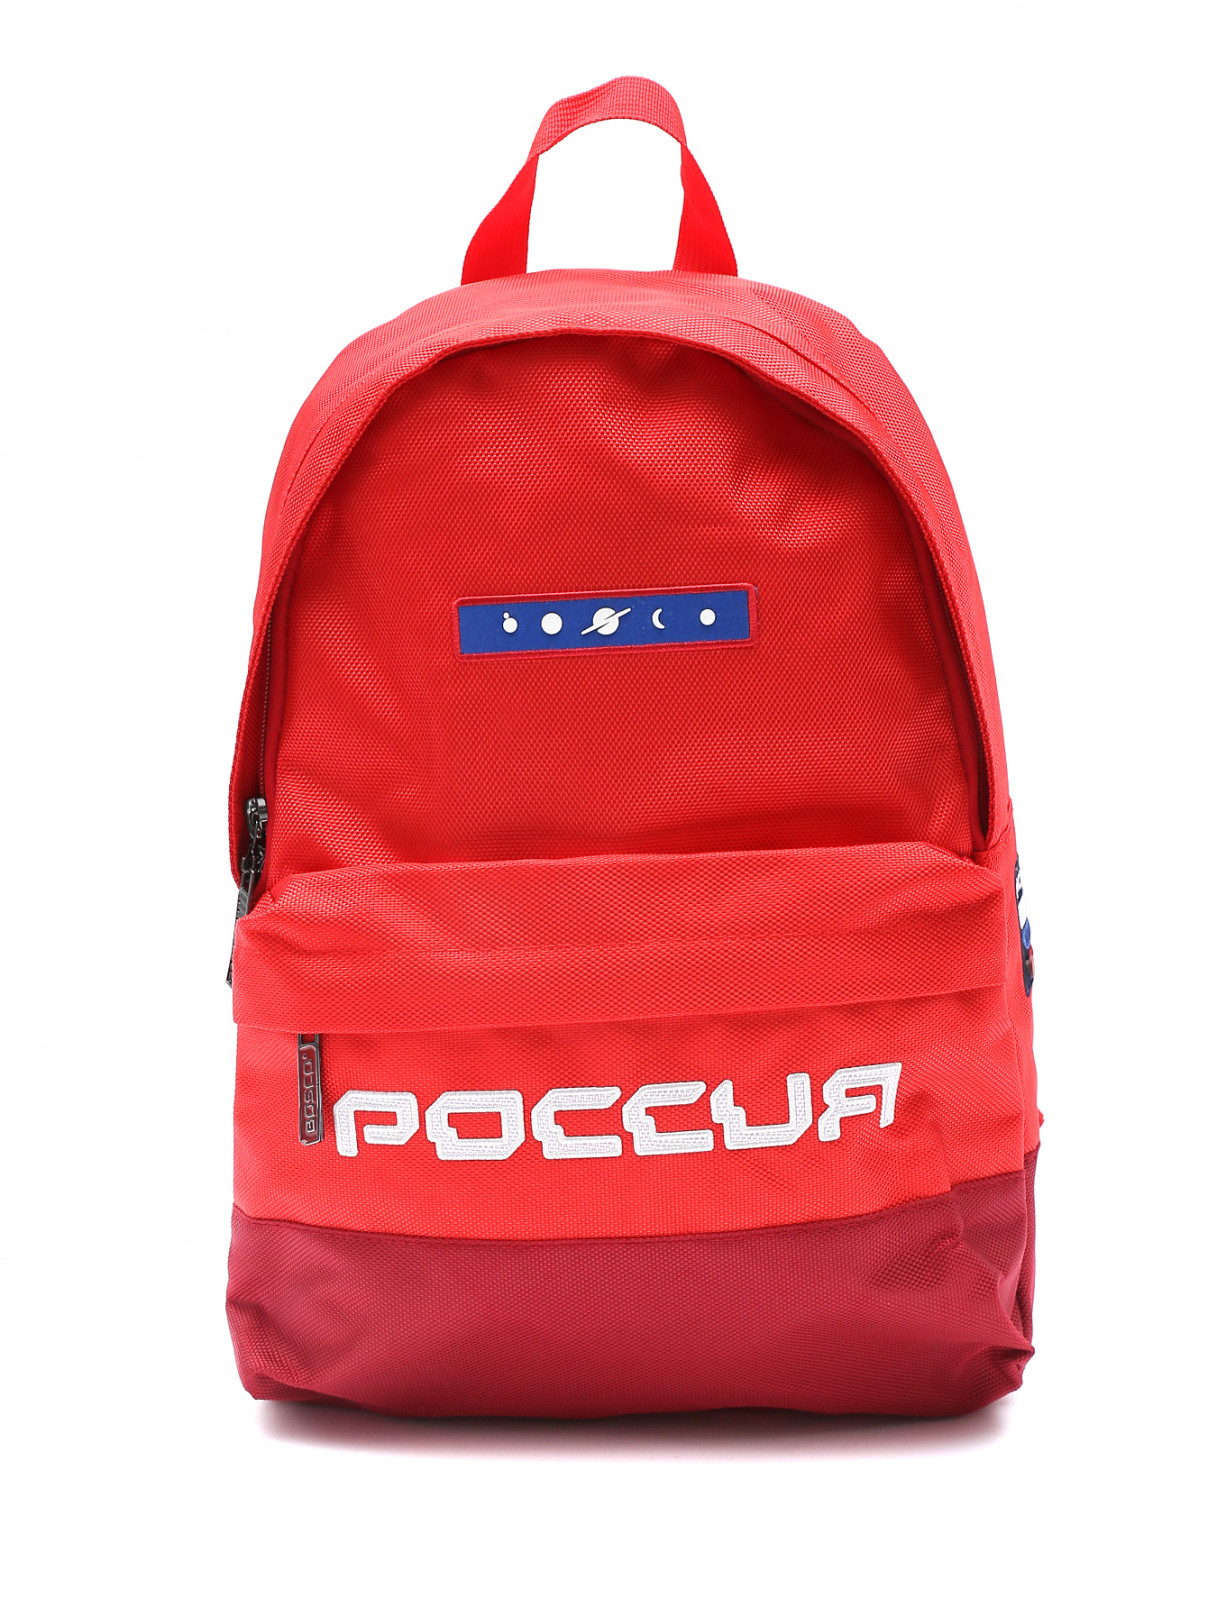 Рюкзак c вышивкой BOSCO  –  Общий вид  – Цвет:  Красный